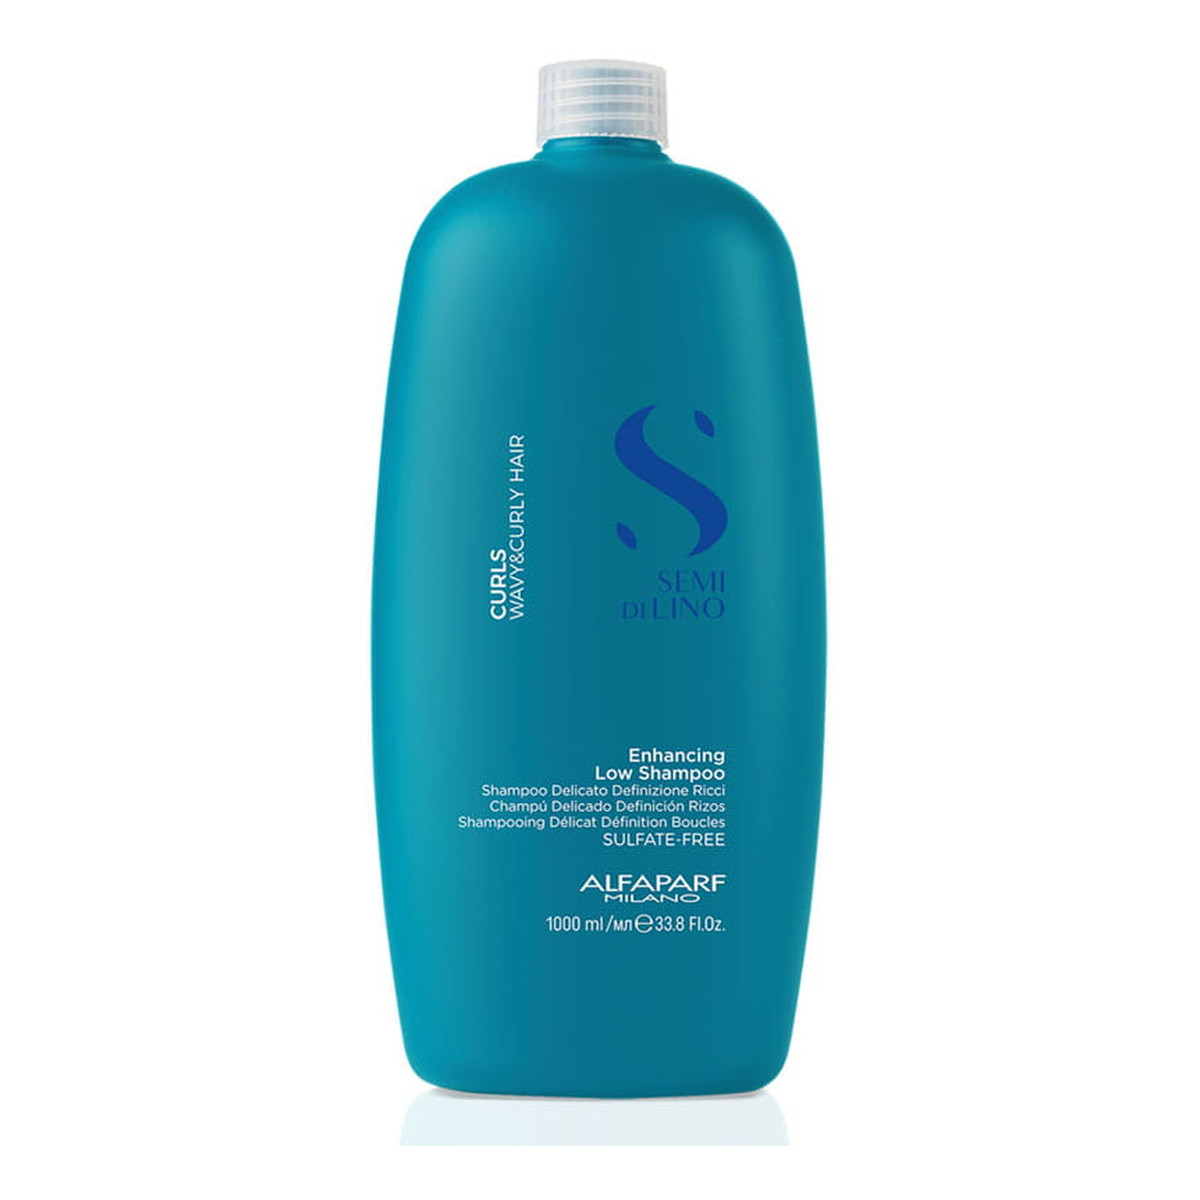 Alfaparf Semi di lino curls enhancing low shampoo wzmacniający szampon do włosów kręconych 1000ml